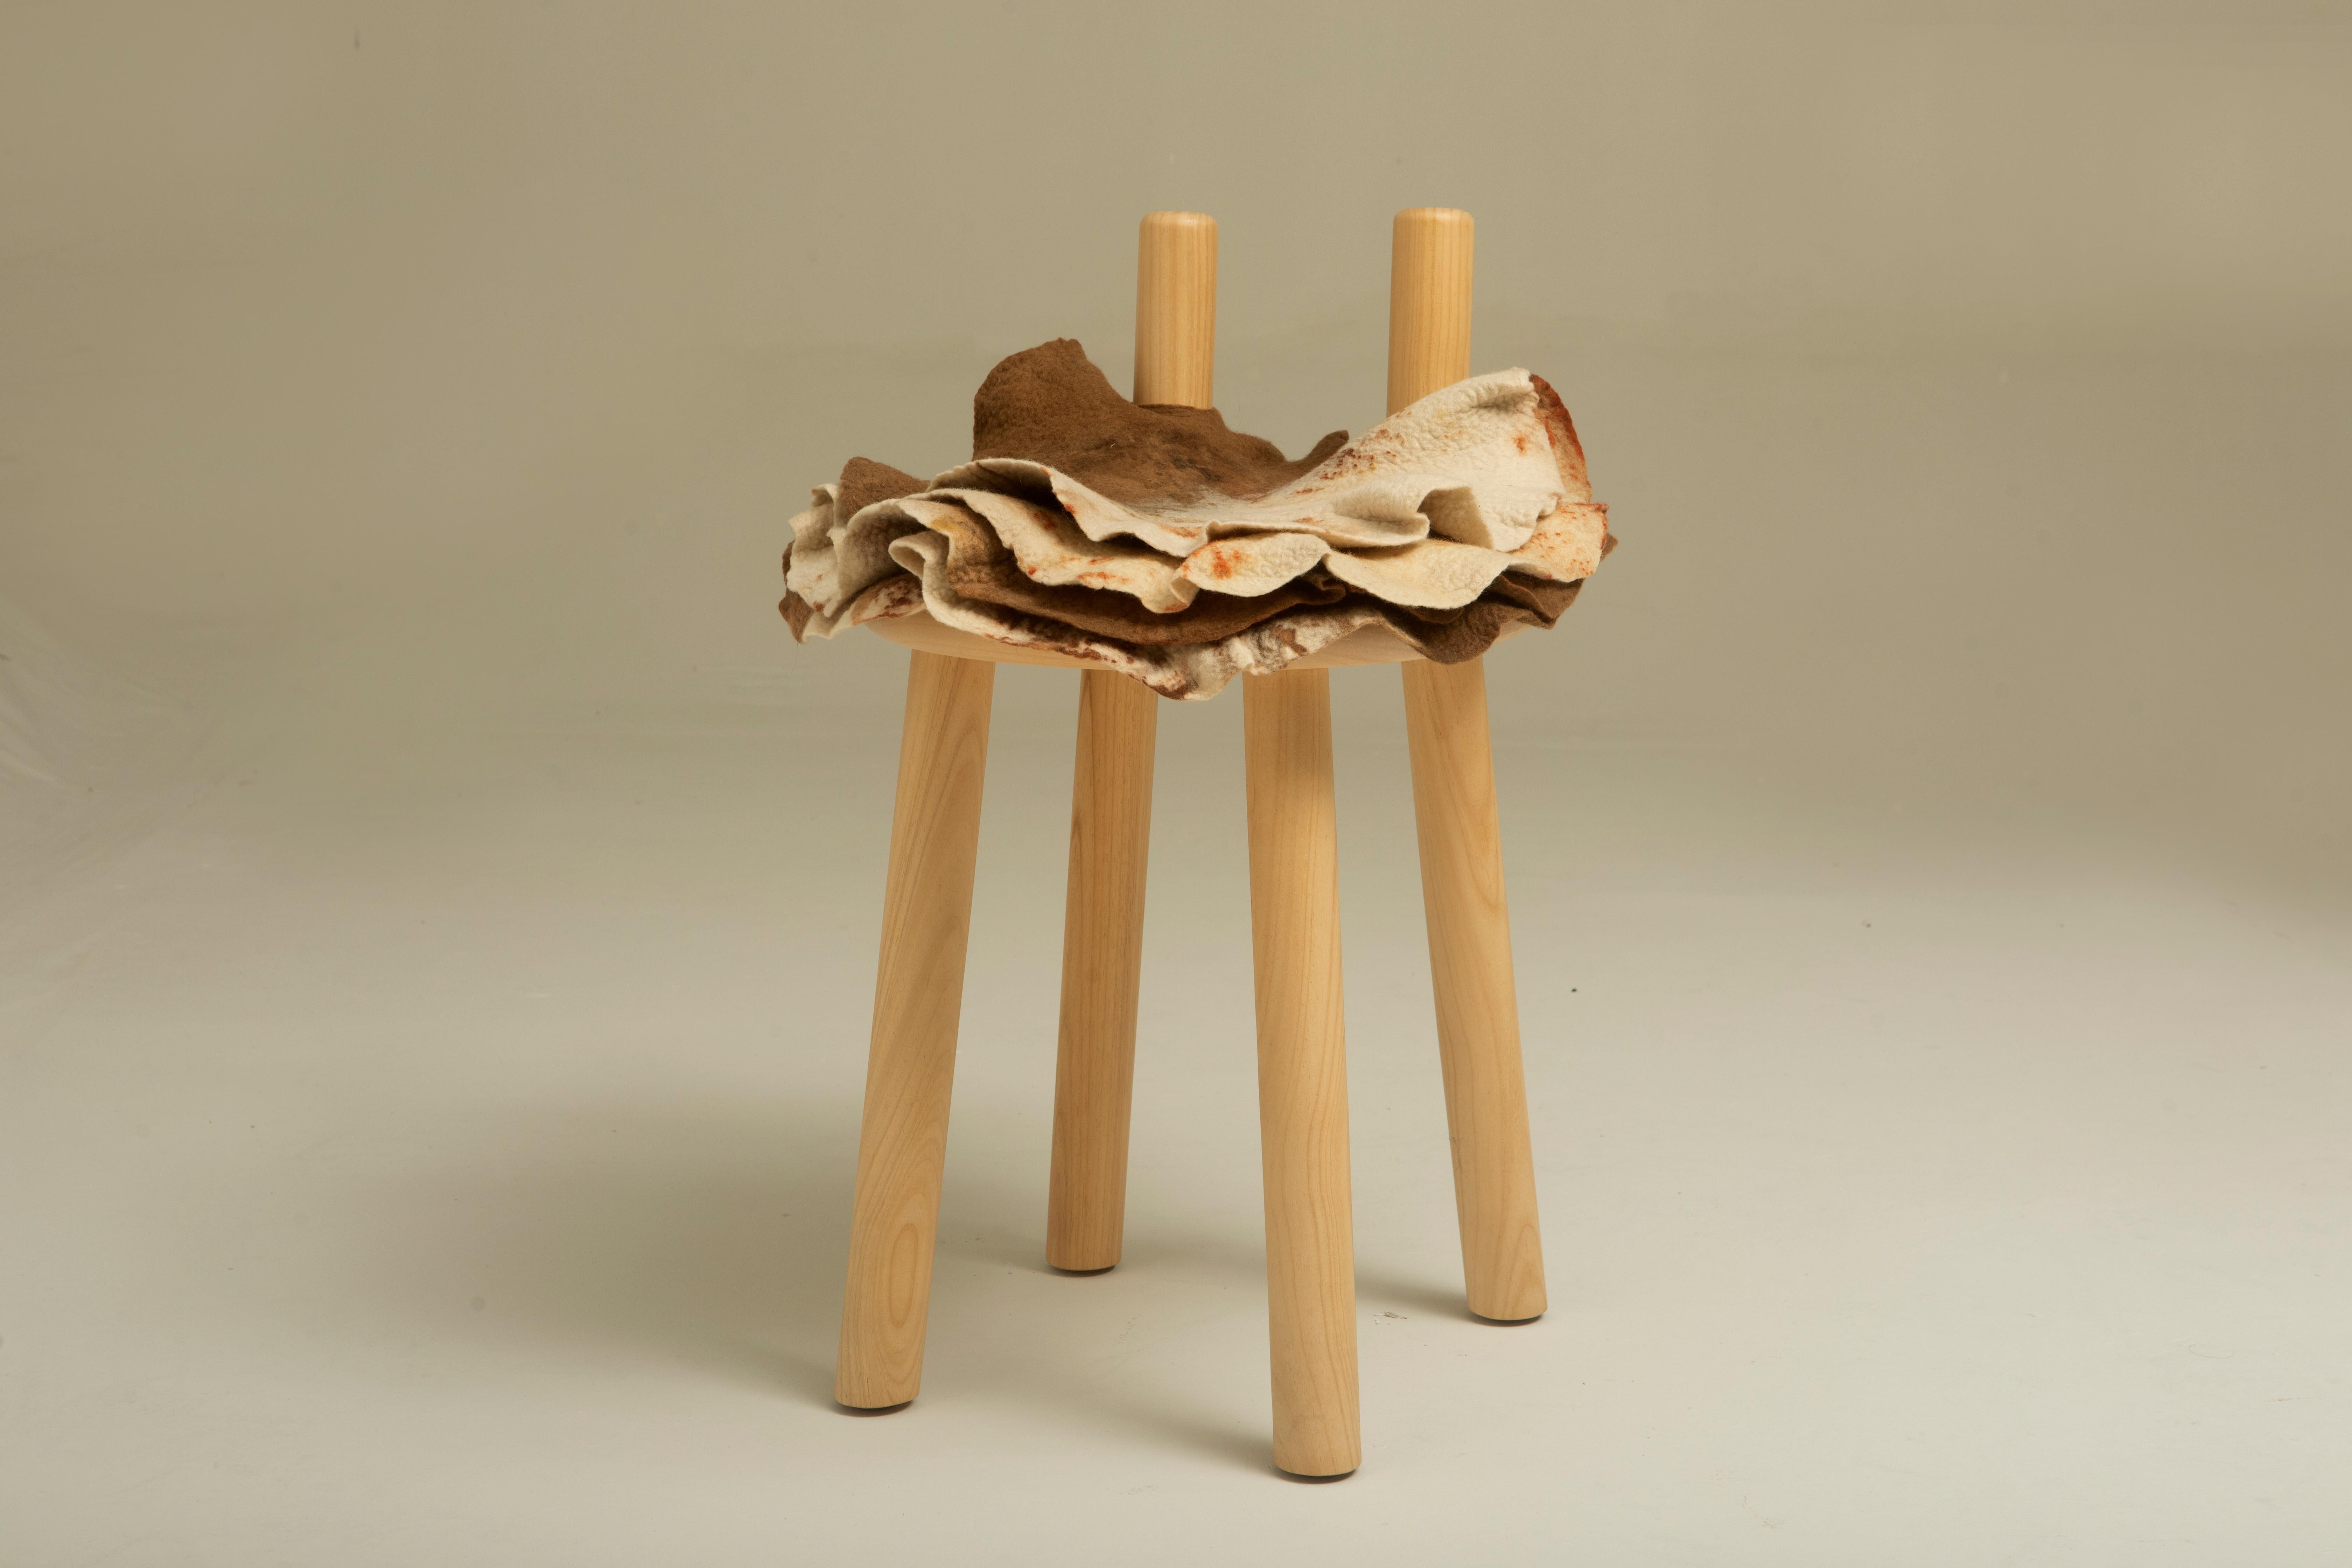 Petite chaise Gaudério en laine et Wood par Inês Schertel, Brésil, 2020

Le matériau principal d'Ines Schertel est la laine de mouton. En tant que praticienne du Slow Design, l'artiste adopte une approche holistique de la conception textile,